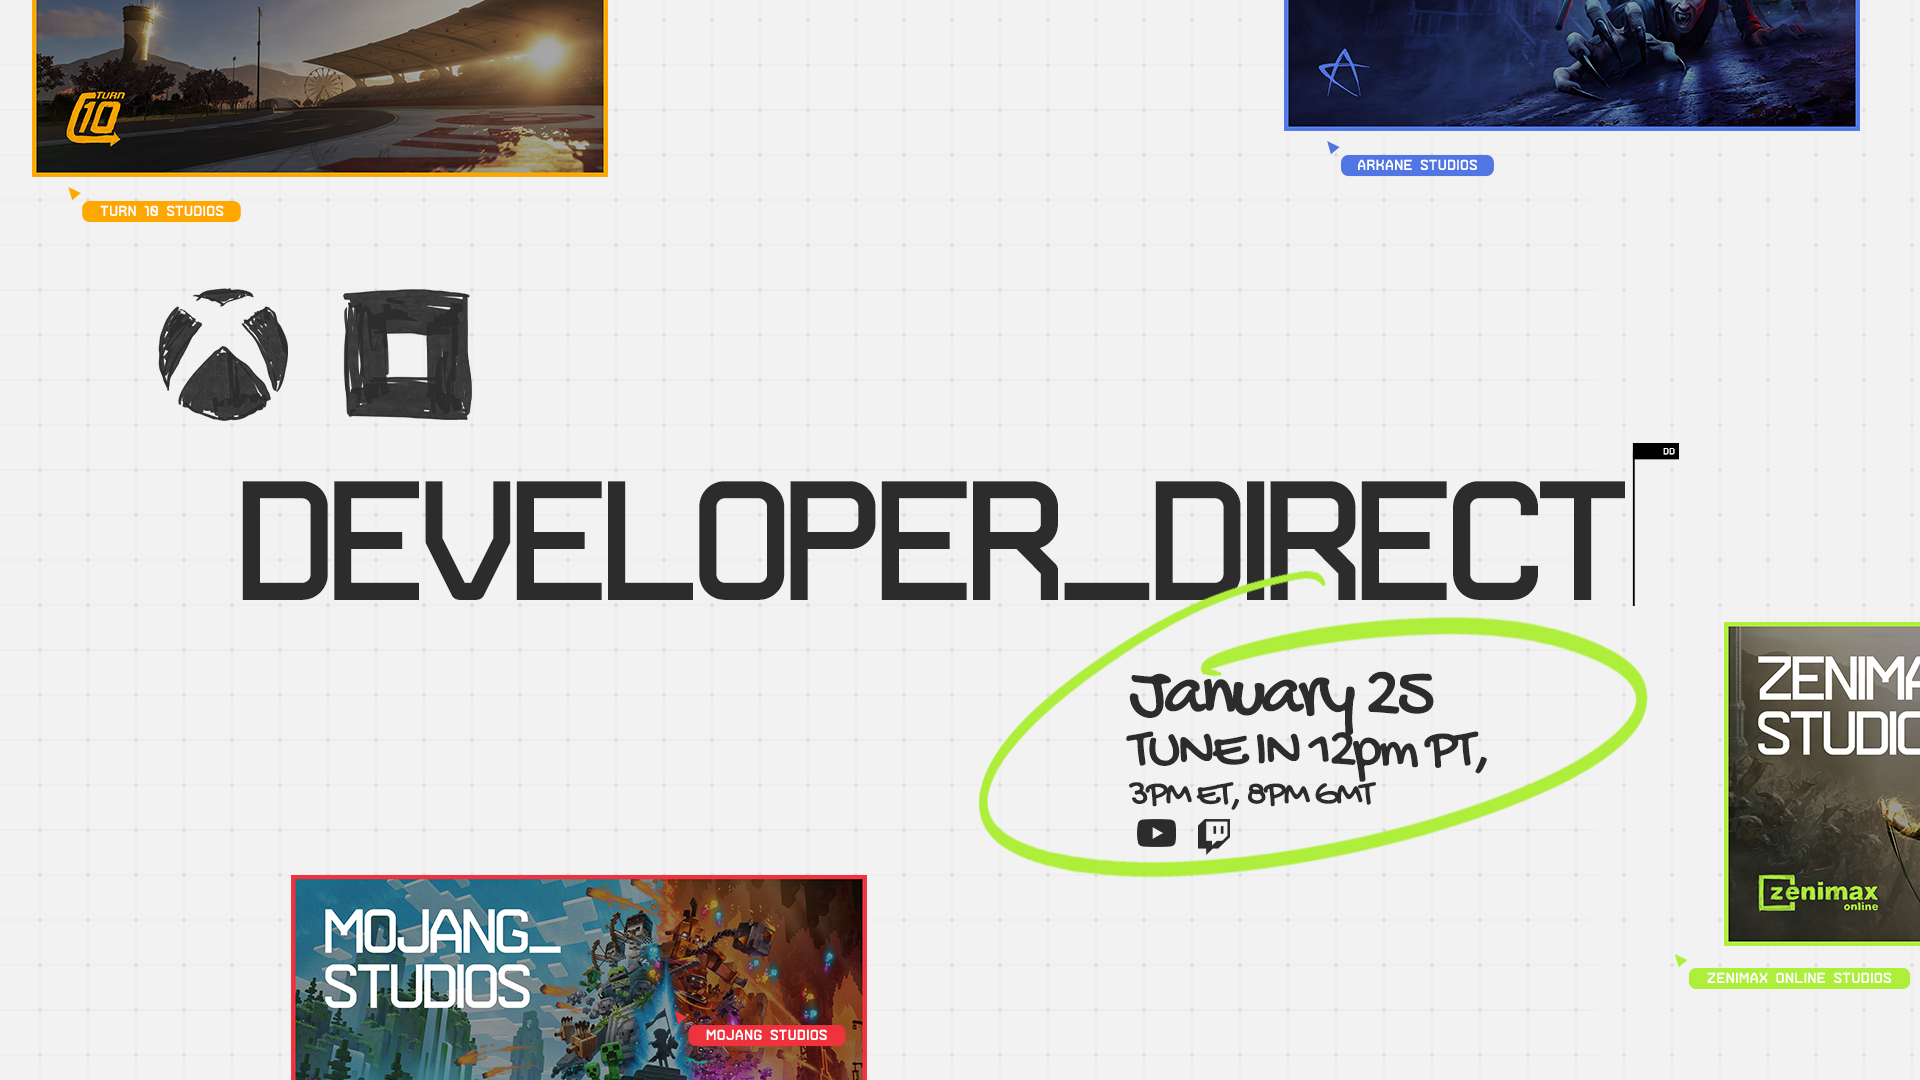 Xbox e Bethesda presenteranno Developer_Direct Livestream il 25 gennaio